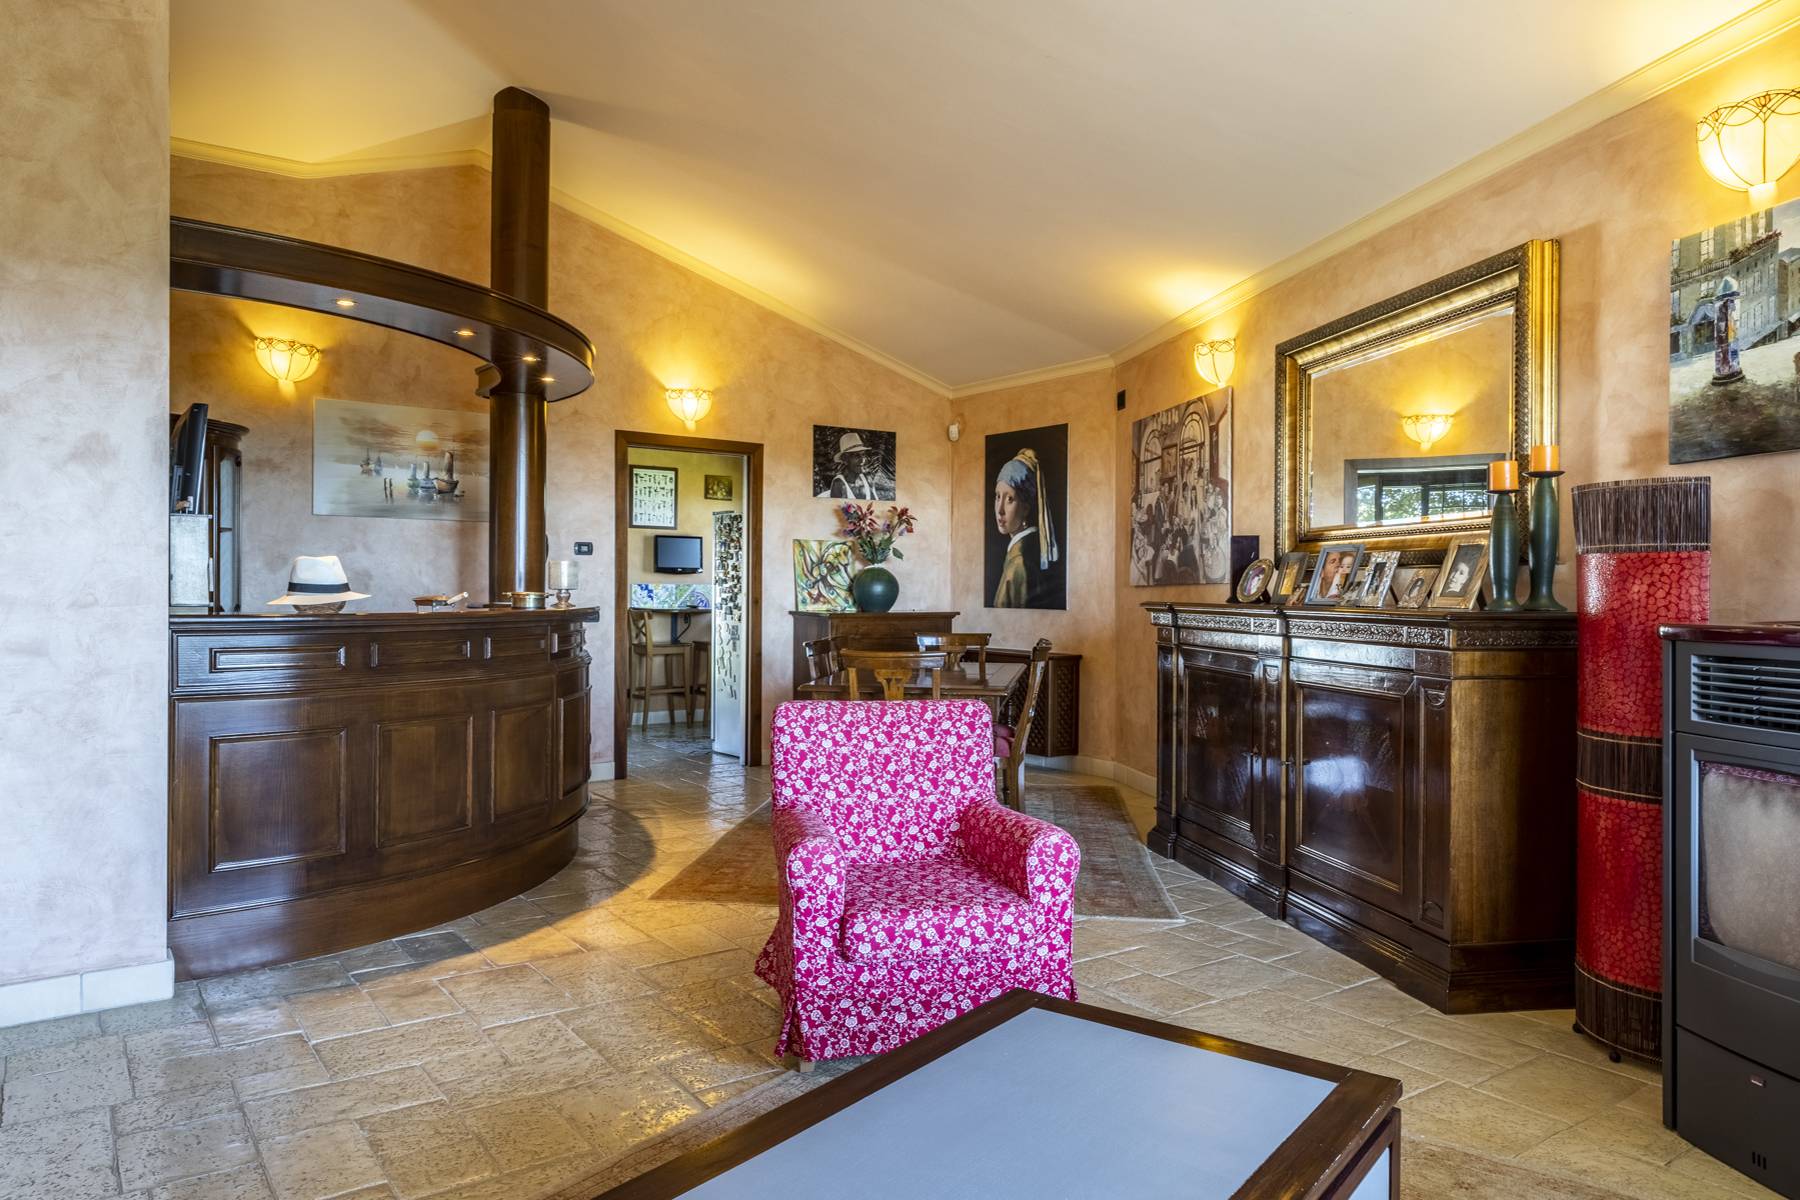 Villa in Vendita a Riano: 5 locali, 500 mq - Foto 24